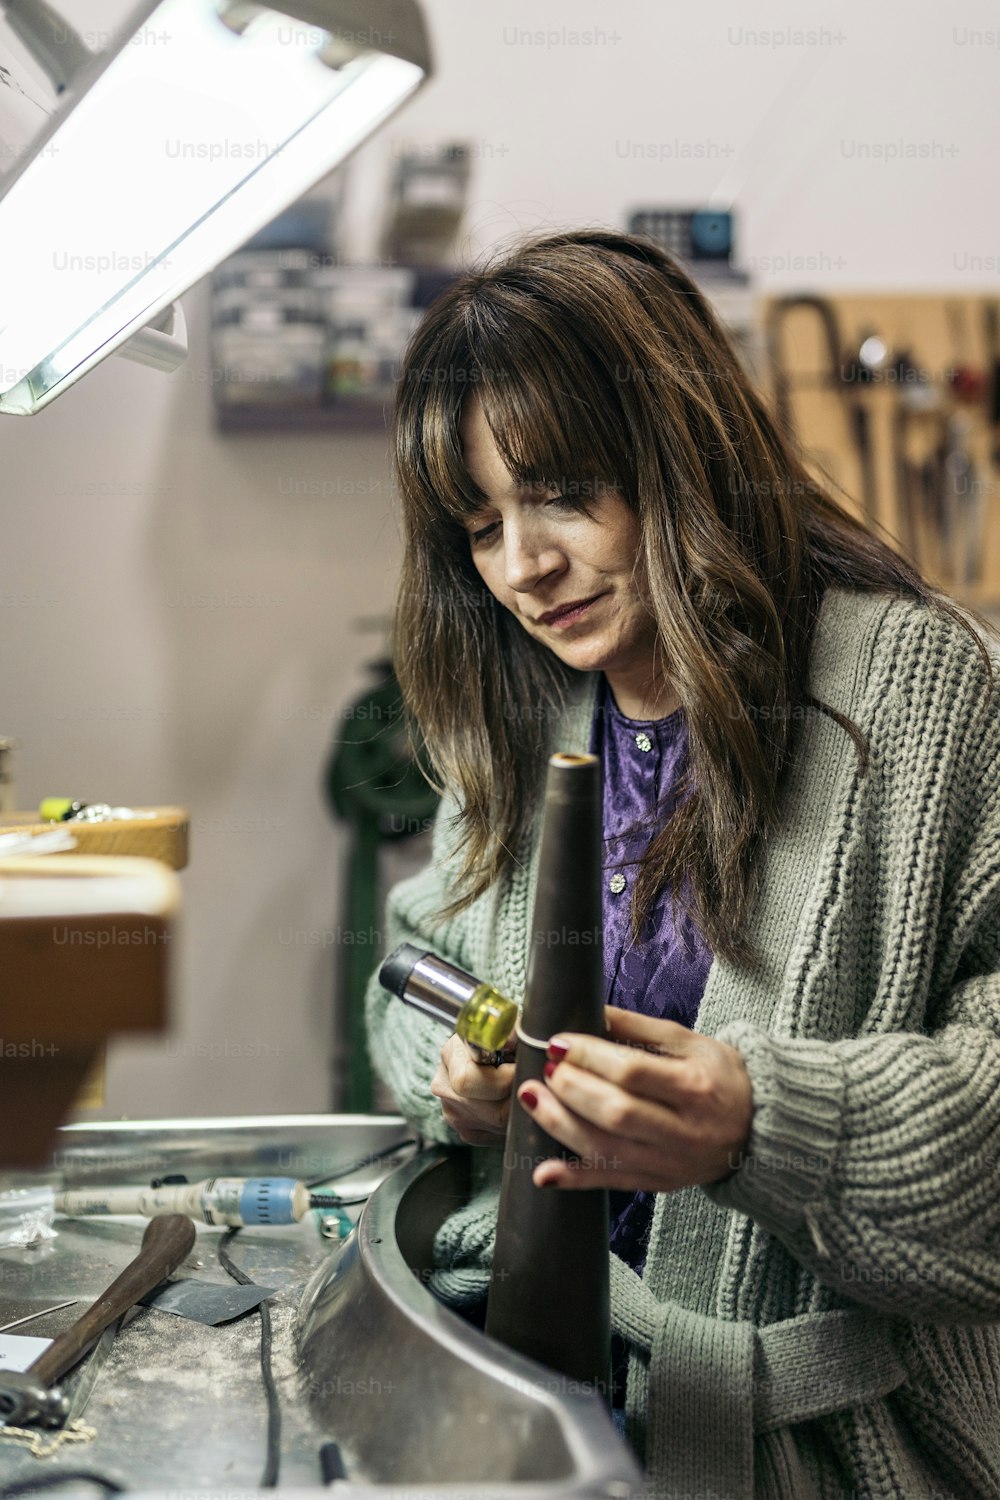 Donna concentrata che utilizza strumenti speciali nel laboratorio di gioielleria.